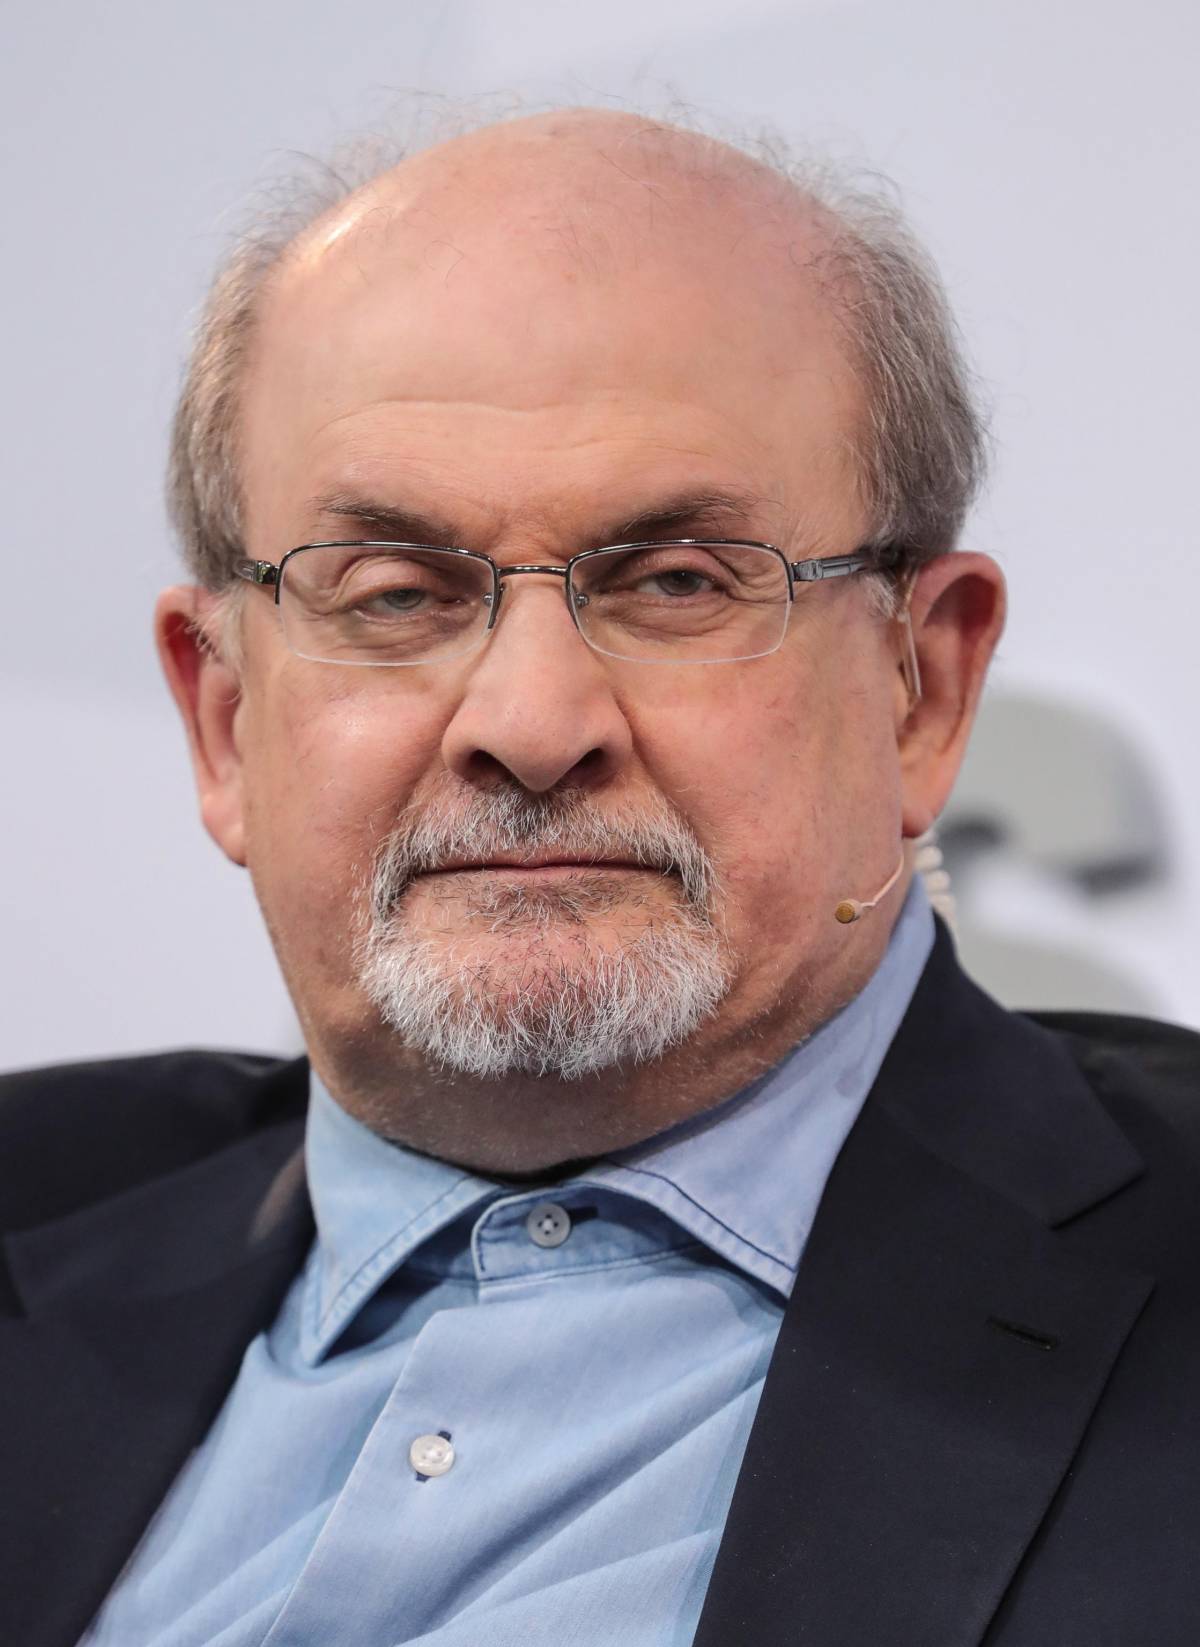 L'attentatore di Rushdie parla dal carcere: "L'ho aggredito perché ha attaccato l'islam"